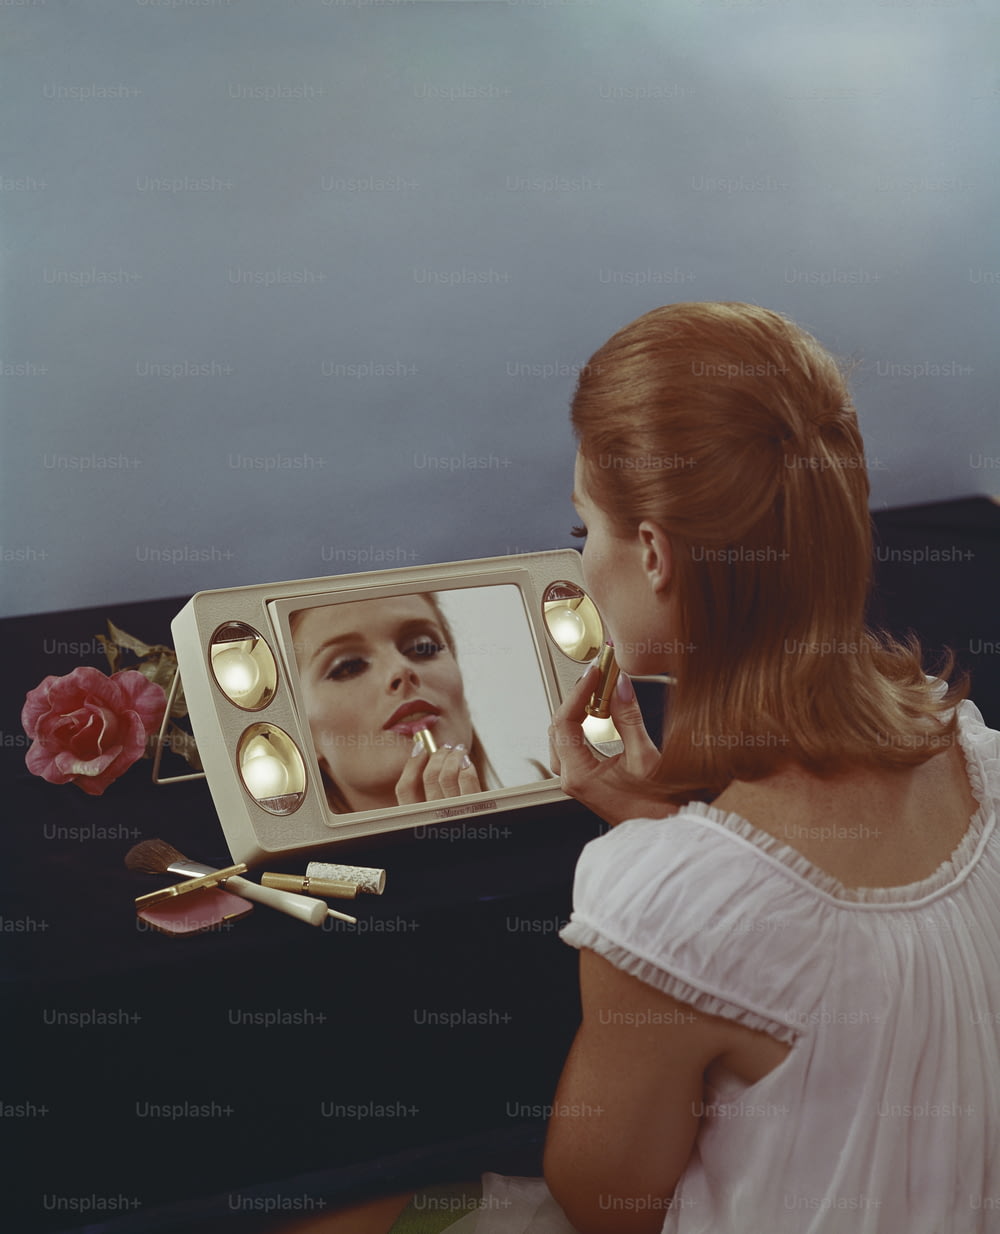 鏡に映った自分の姿を見ている女性